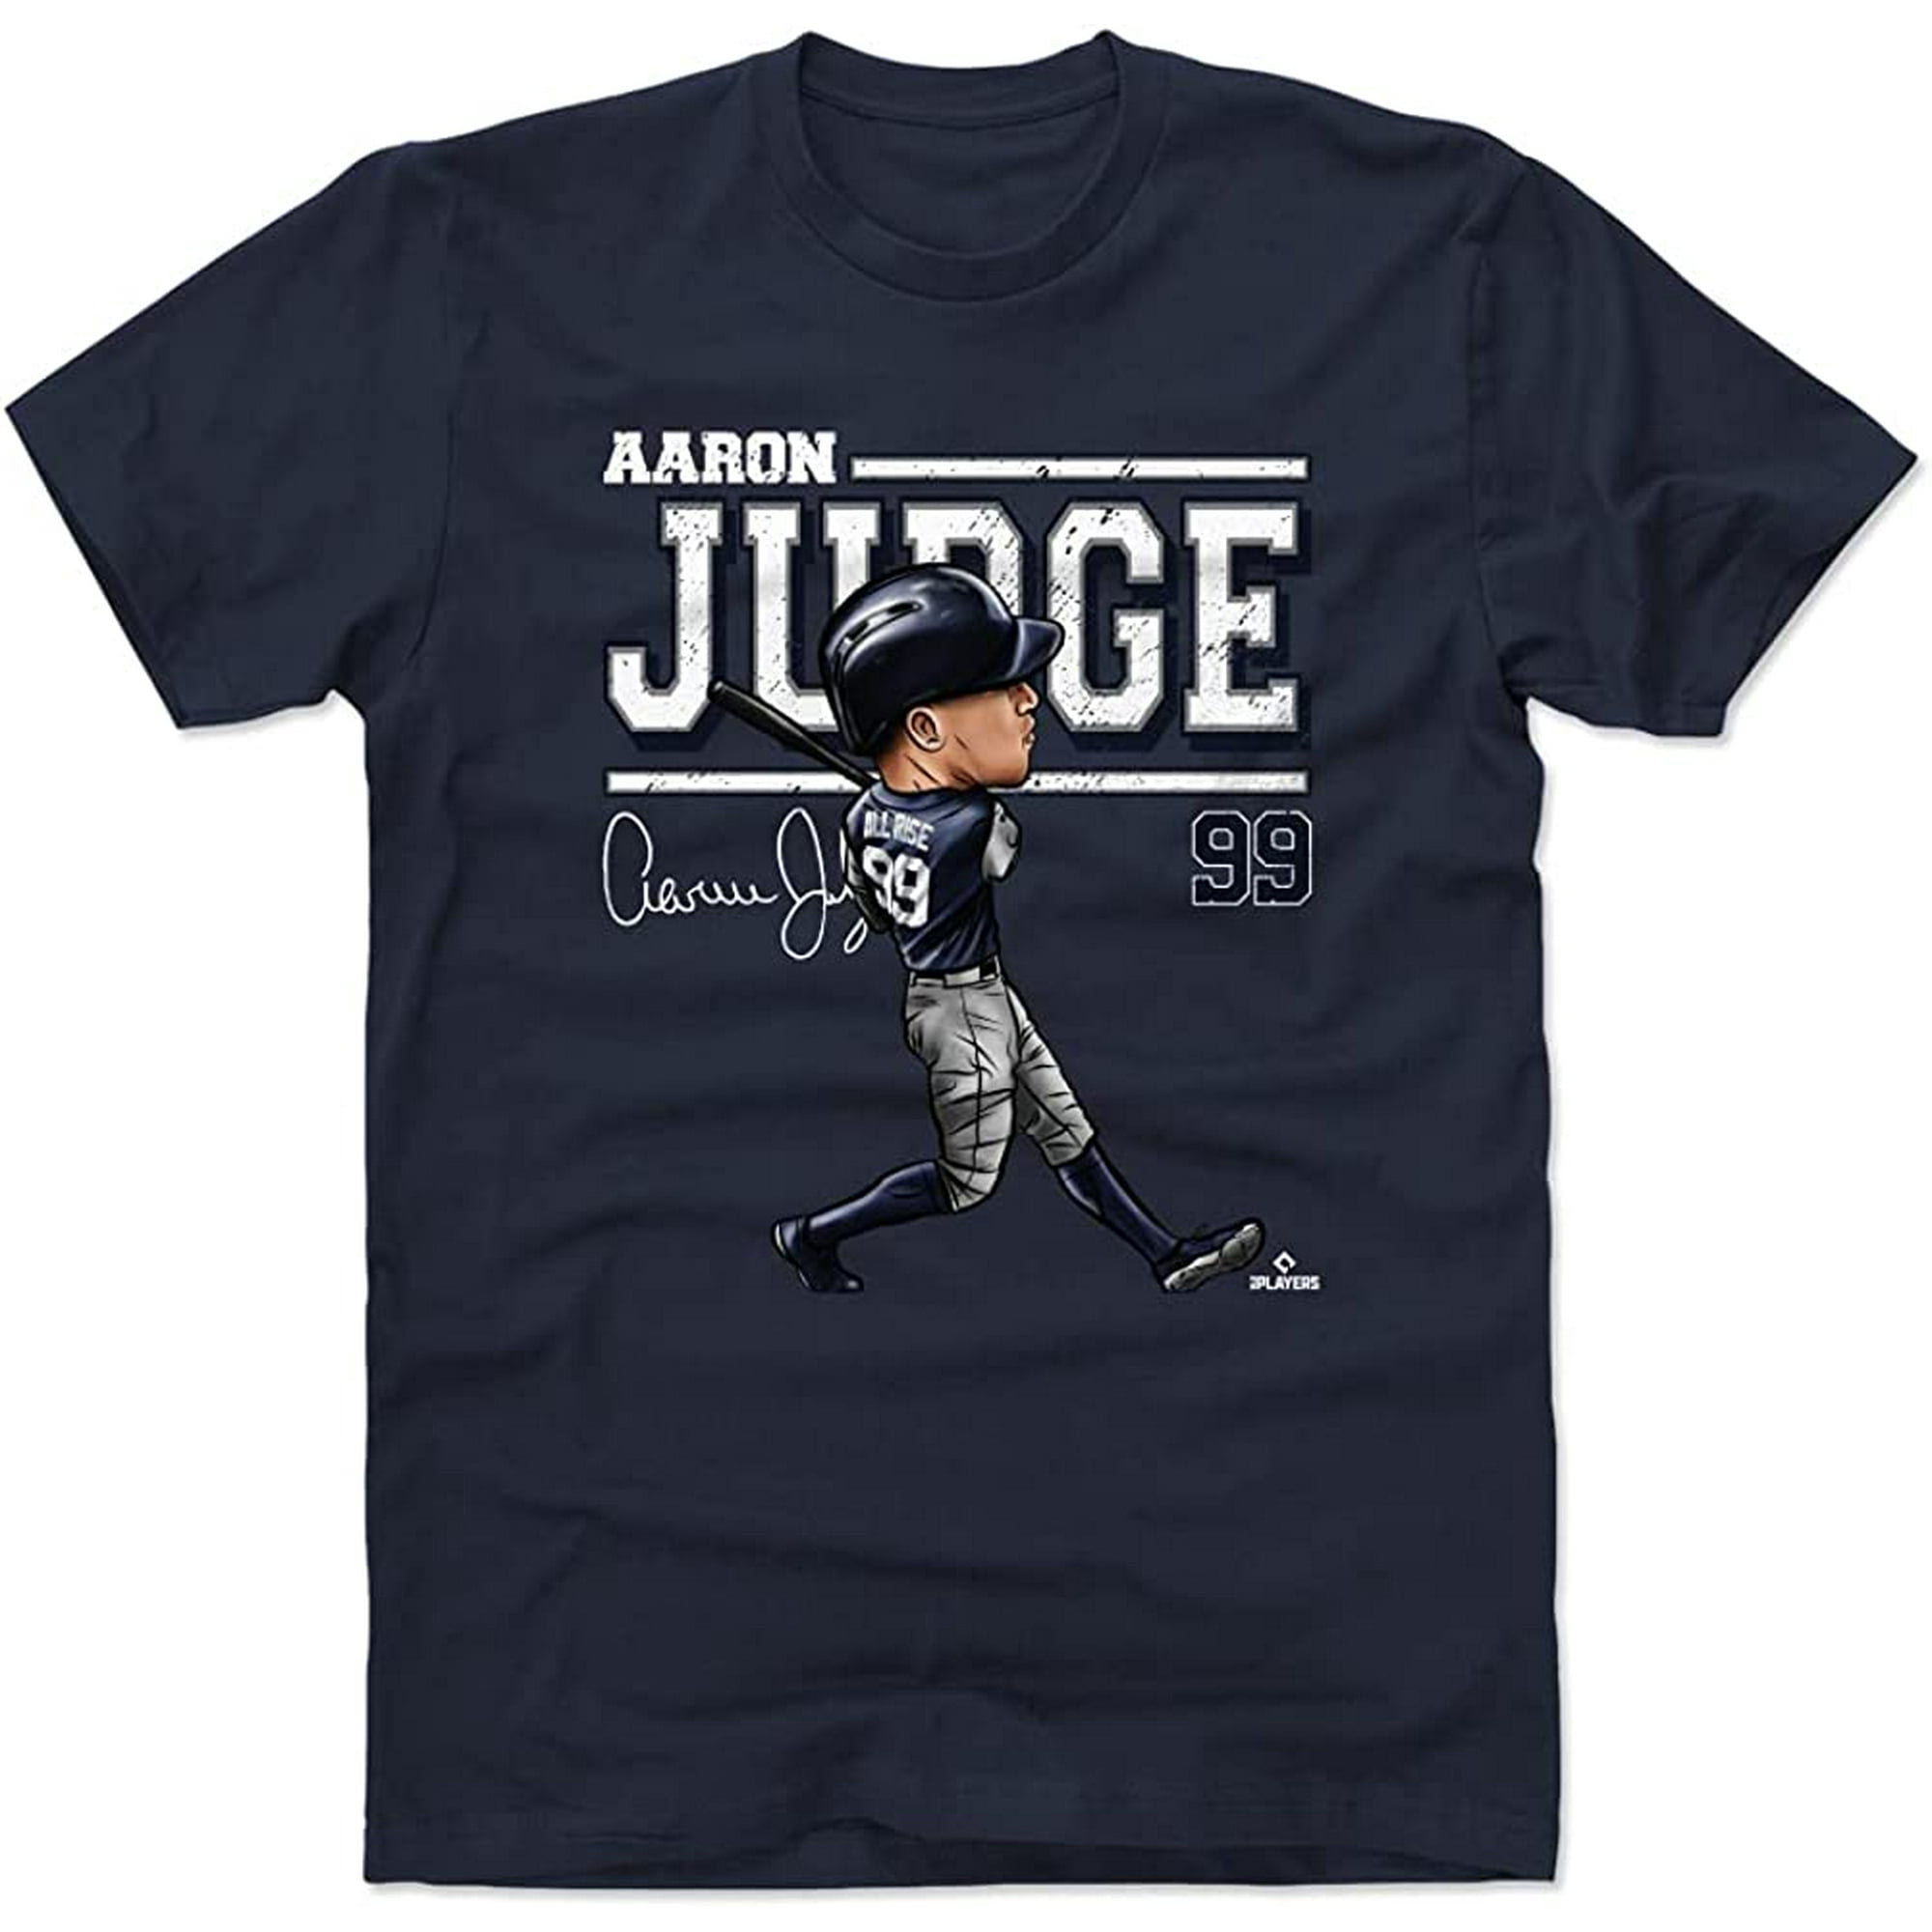 Female Aaron Judge Jerseys & Gear in MLB Fan Shop 